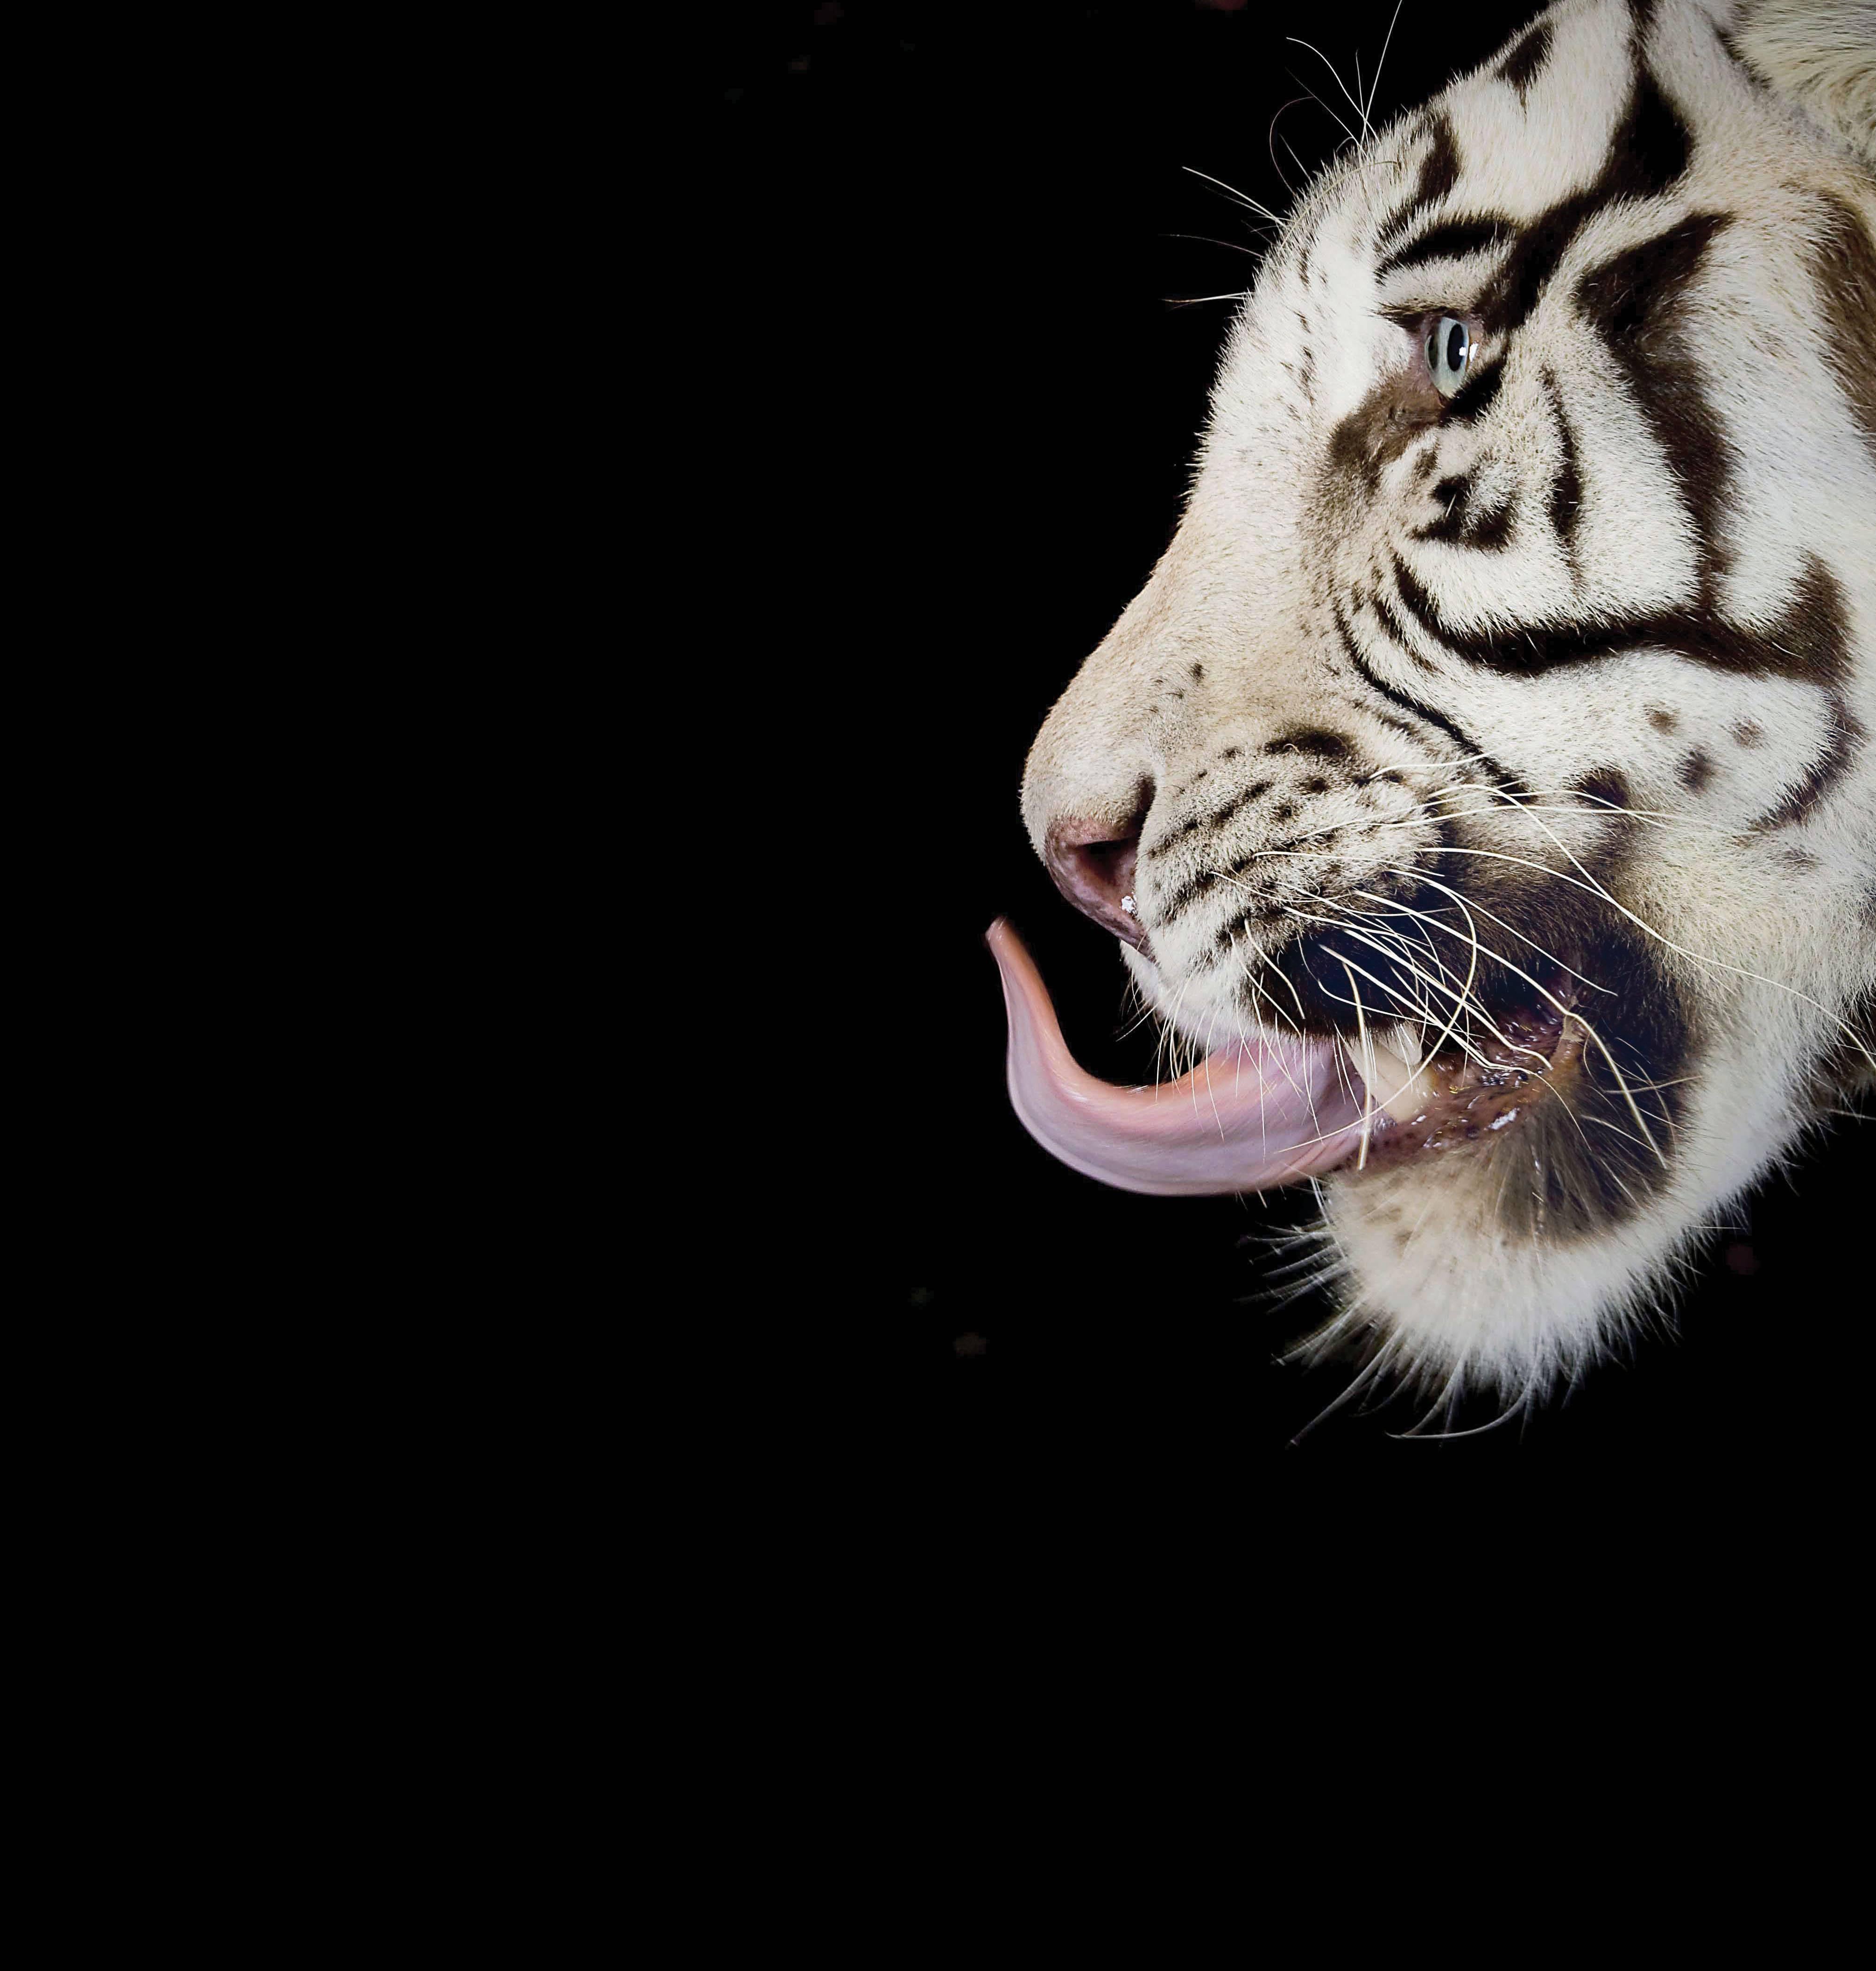 Mauricio Velez Color Photograph - Half Angels Half Demons - Tiger #27,  Portrait. Limited edition color photograph